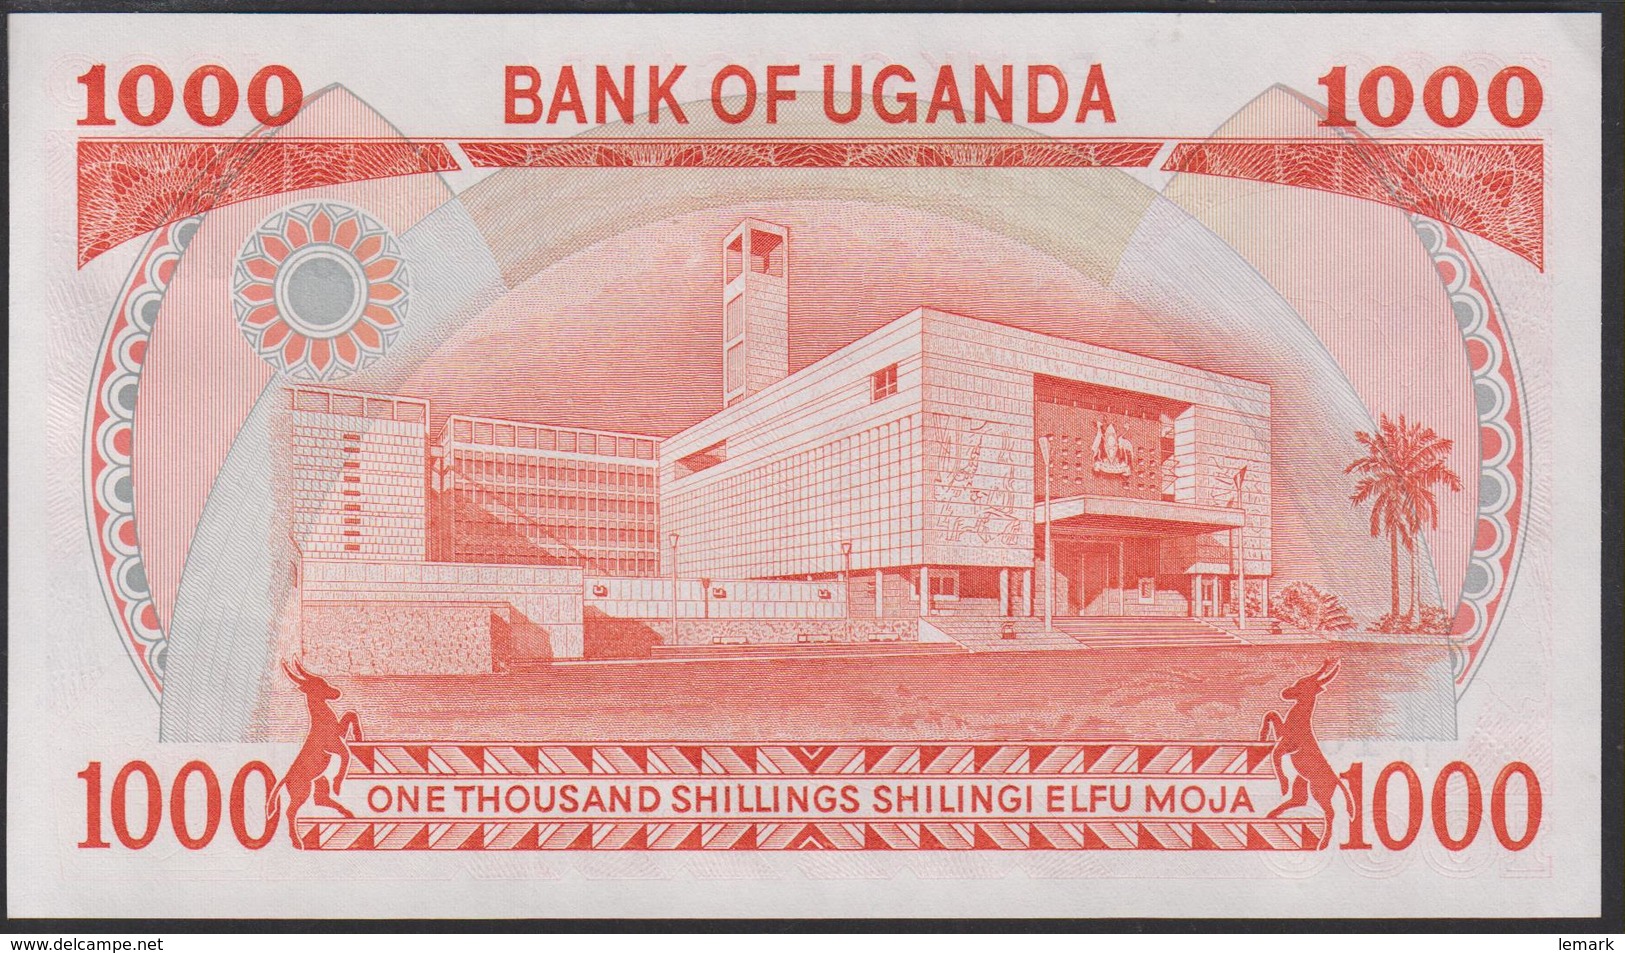 Uganda 1000 Shillings 1986 P26 UNC - Uganda